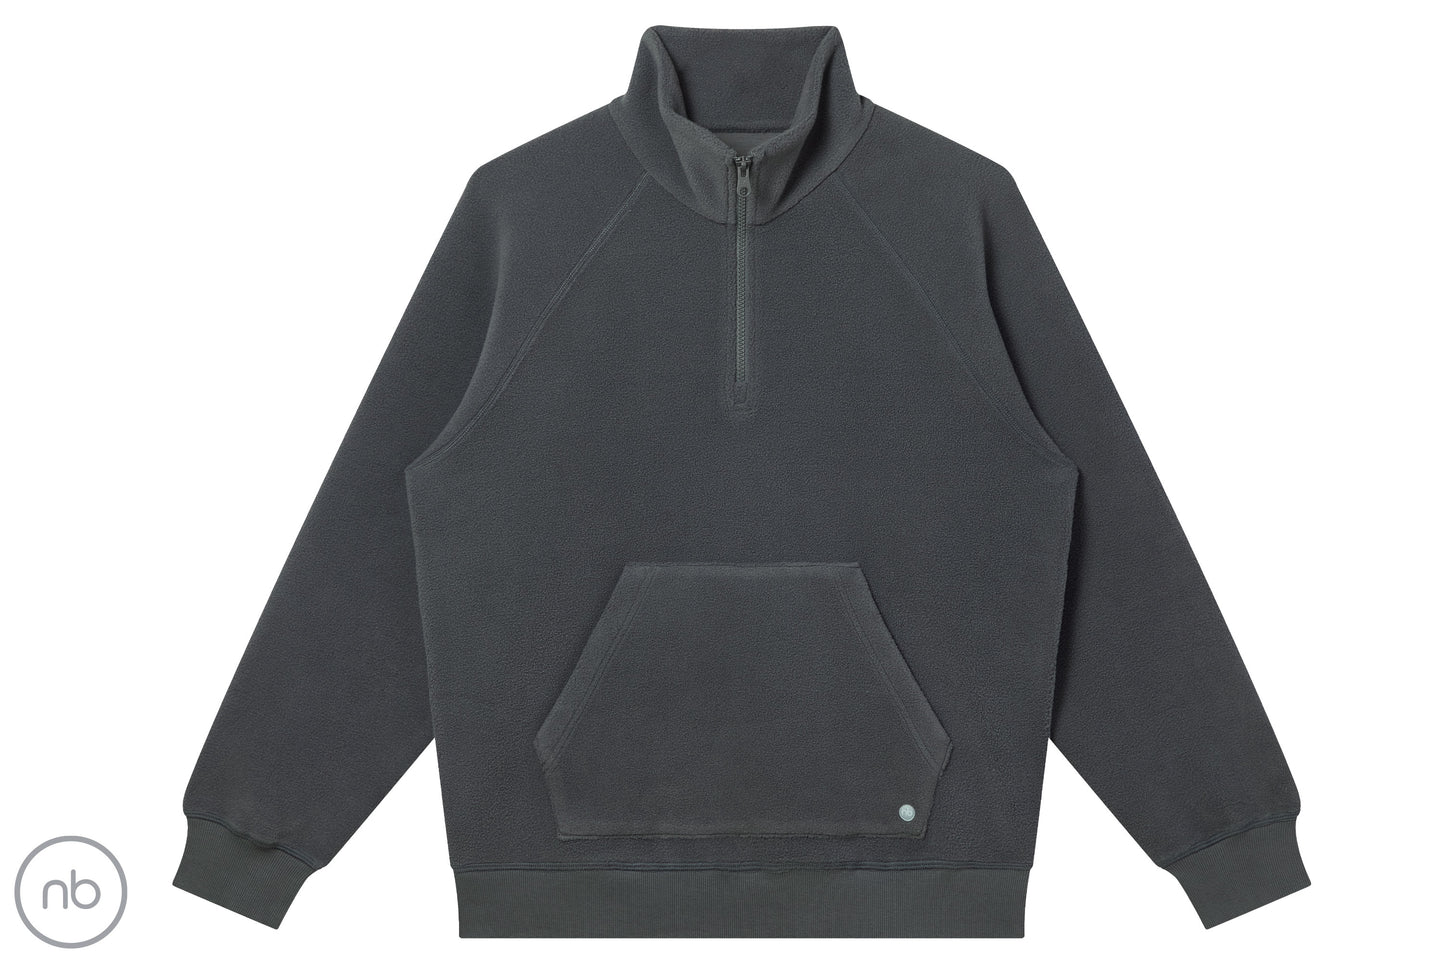 Basics Unisex Half Zip Fleece Top - Dark Charcoal – Nest Designs